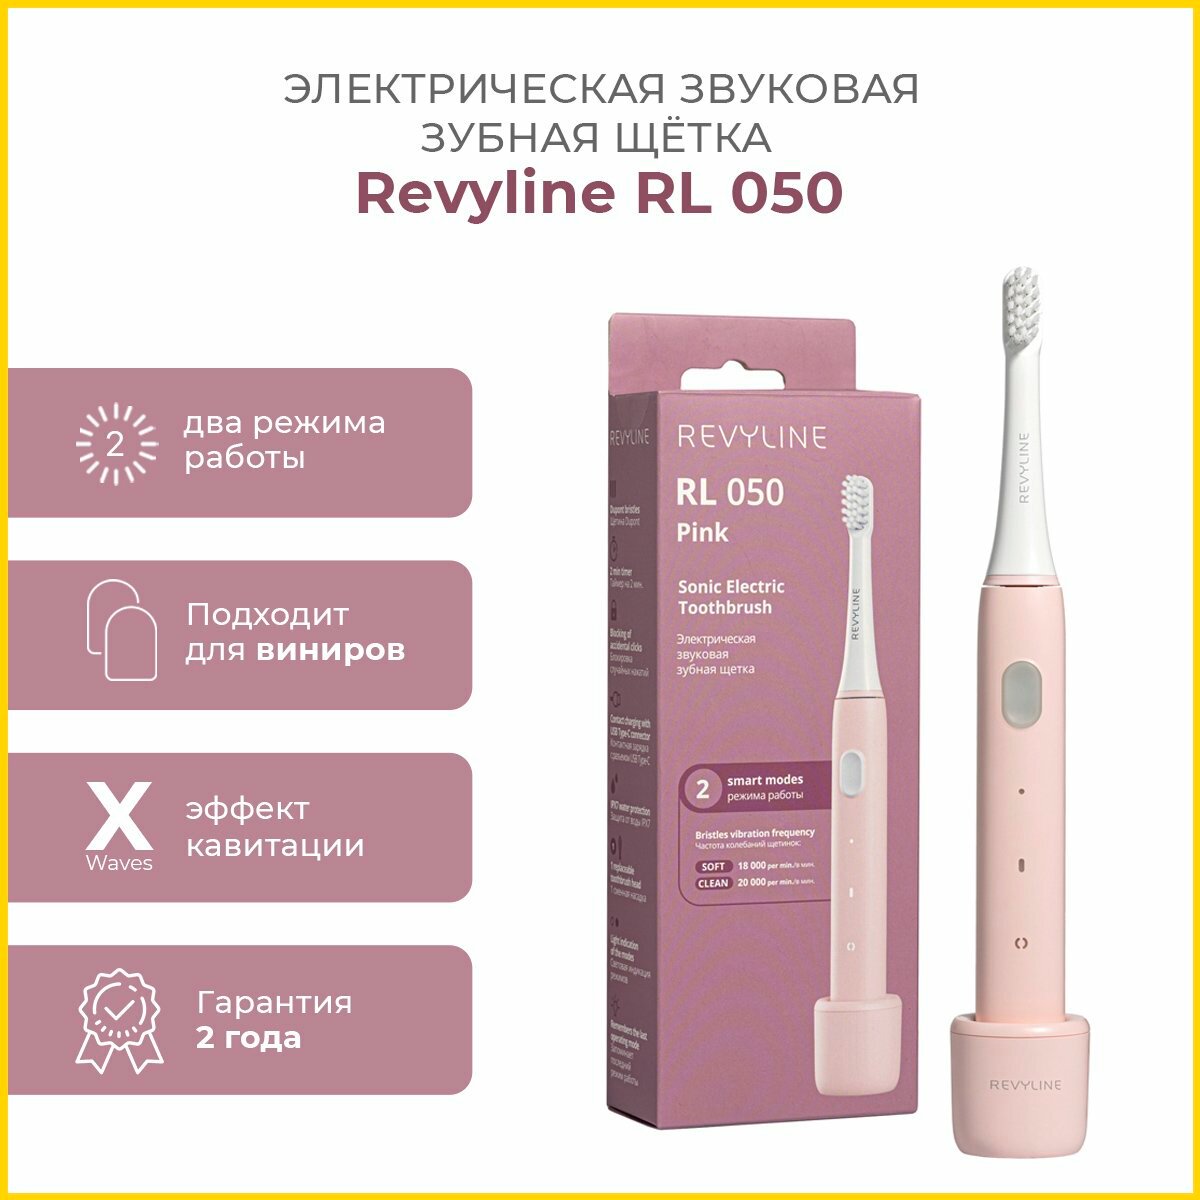 Электрическая звуковая зубная щетка Revyline RL 050, розовая